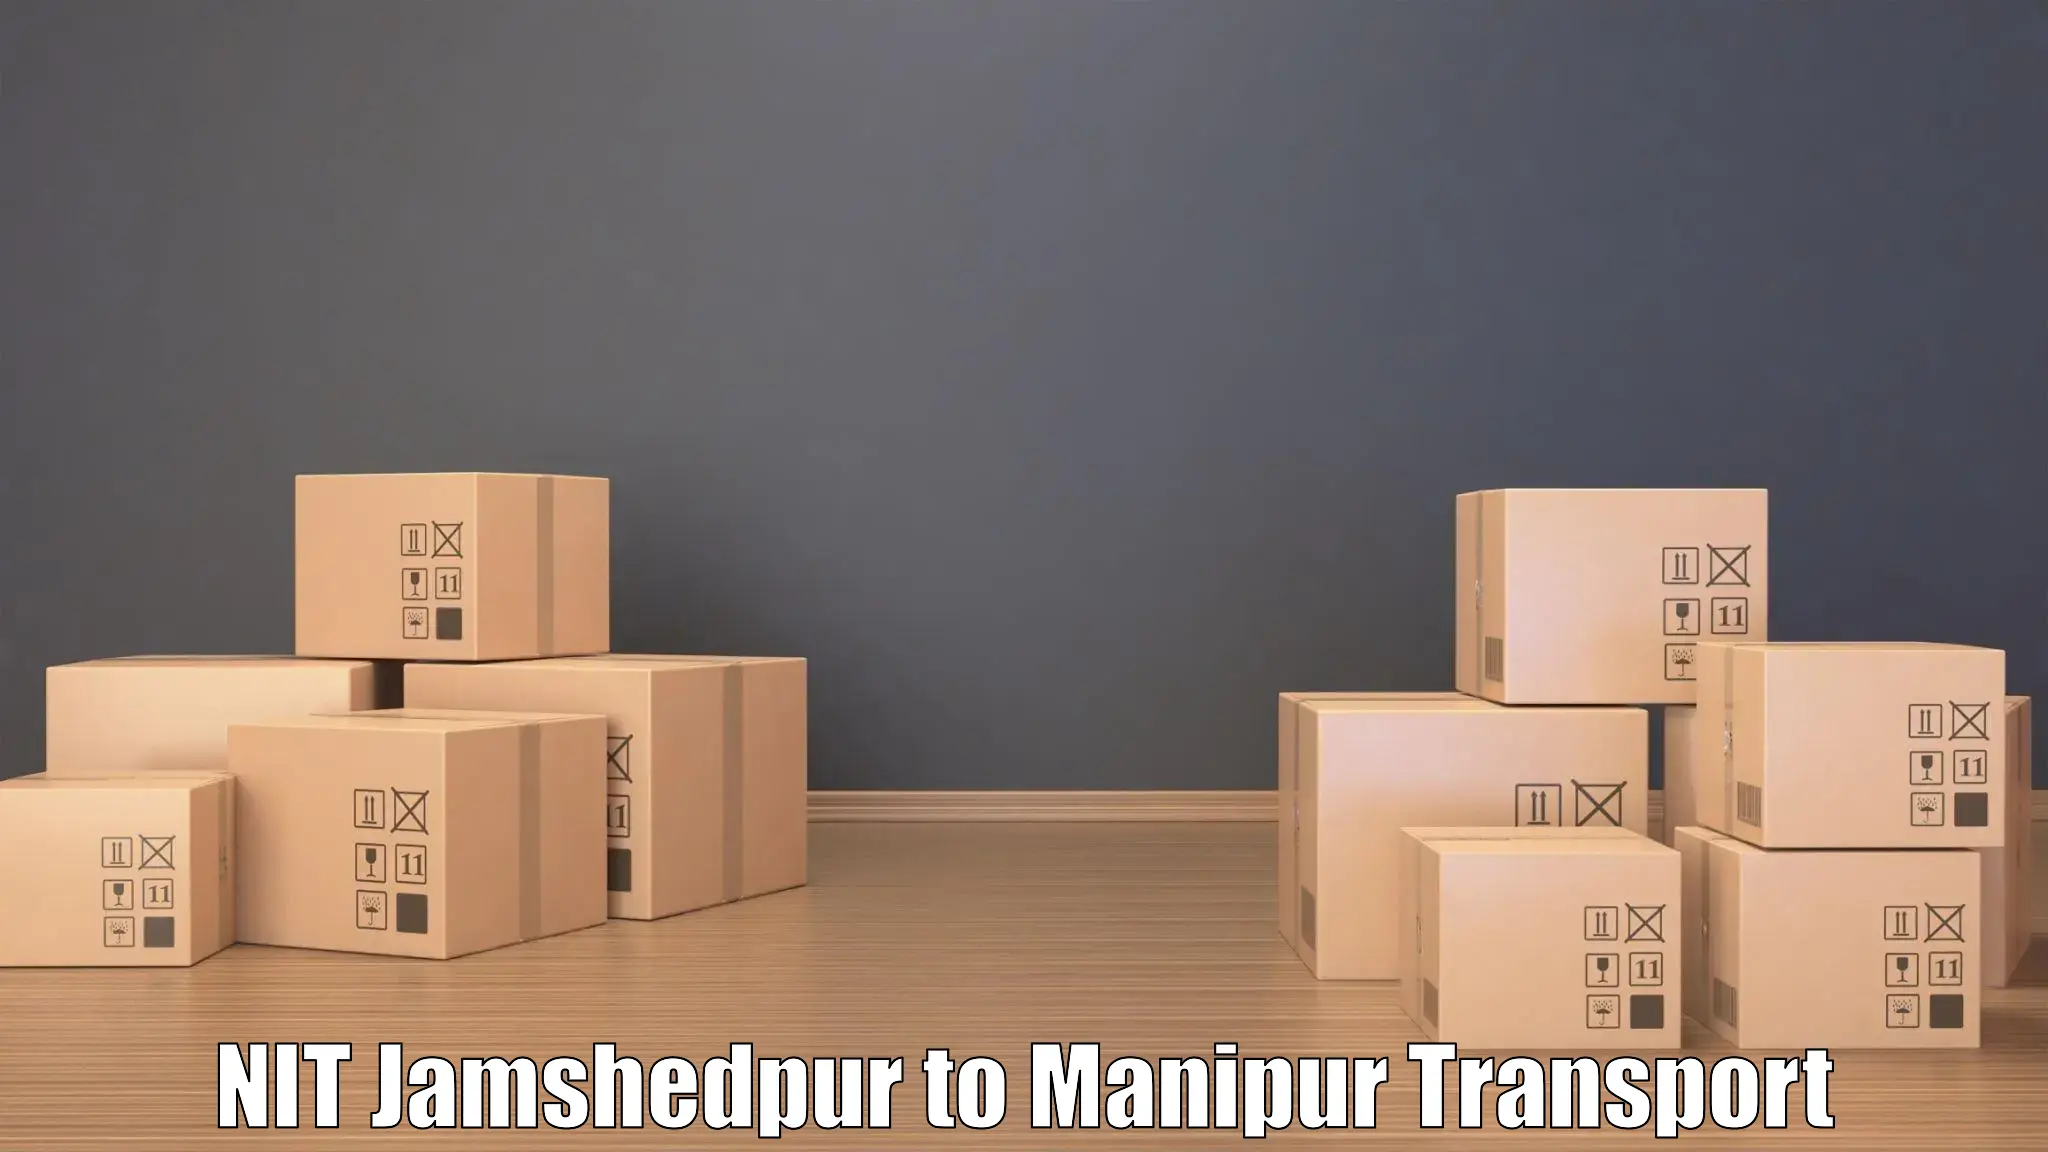 Road transport online services NIT Jamshedpur to Chandel